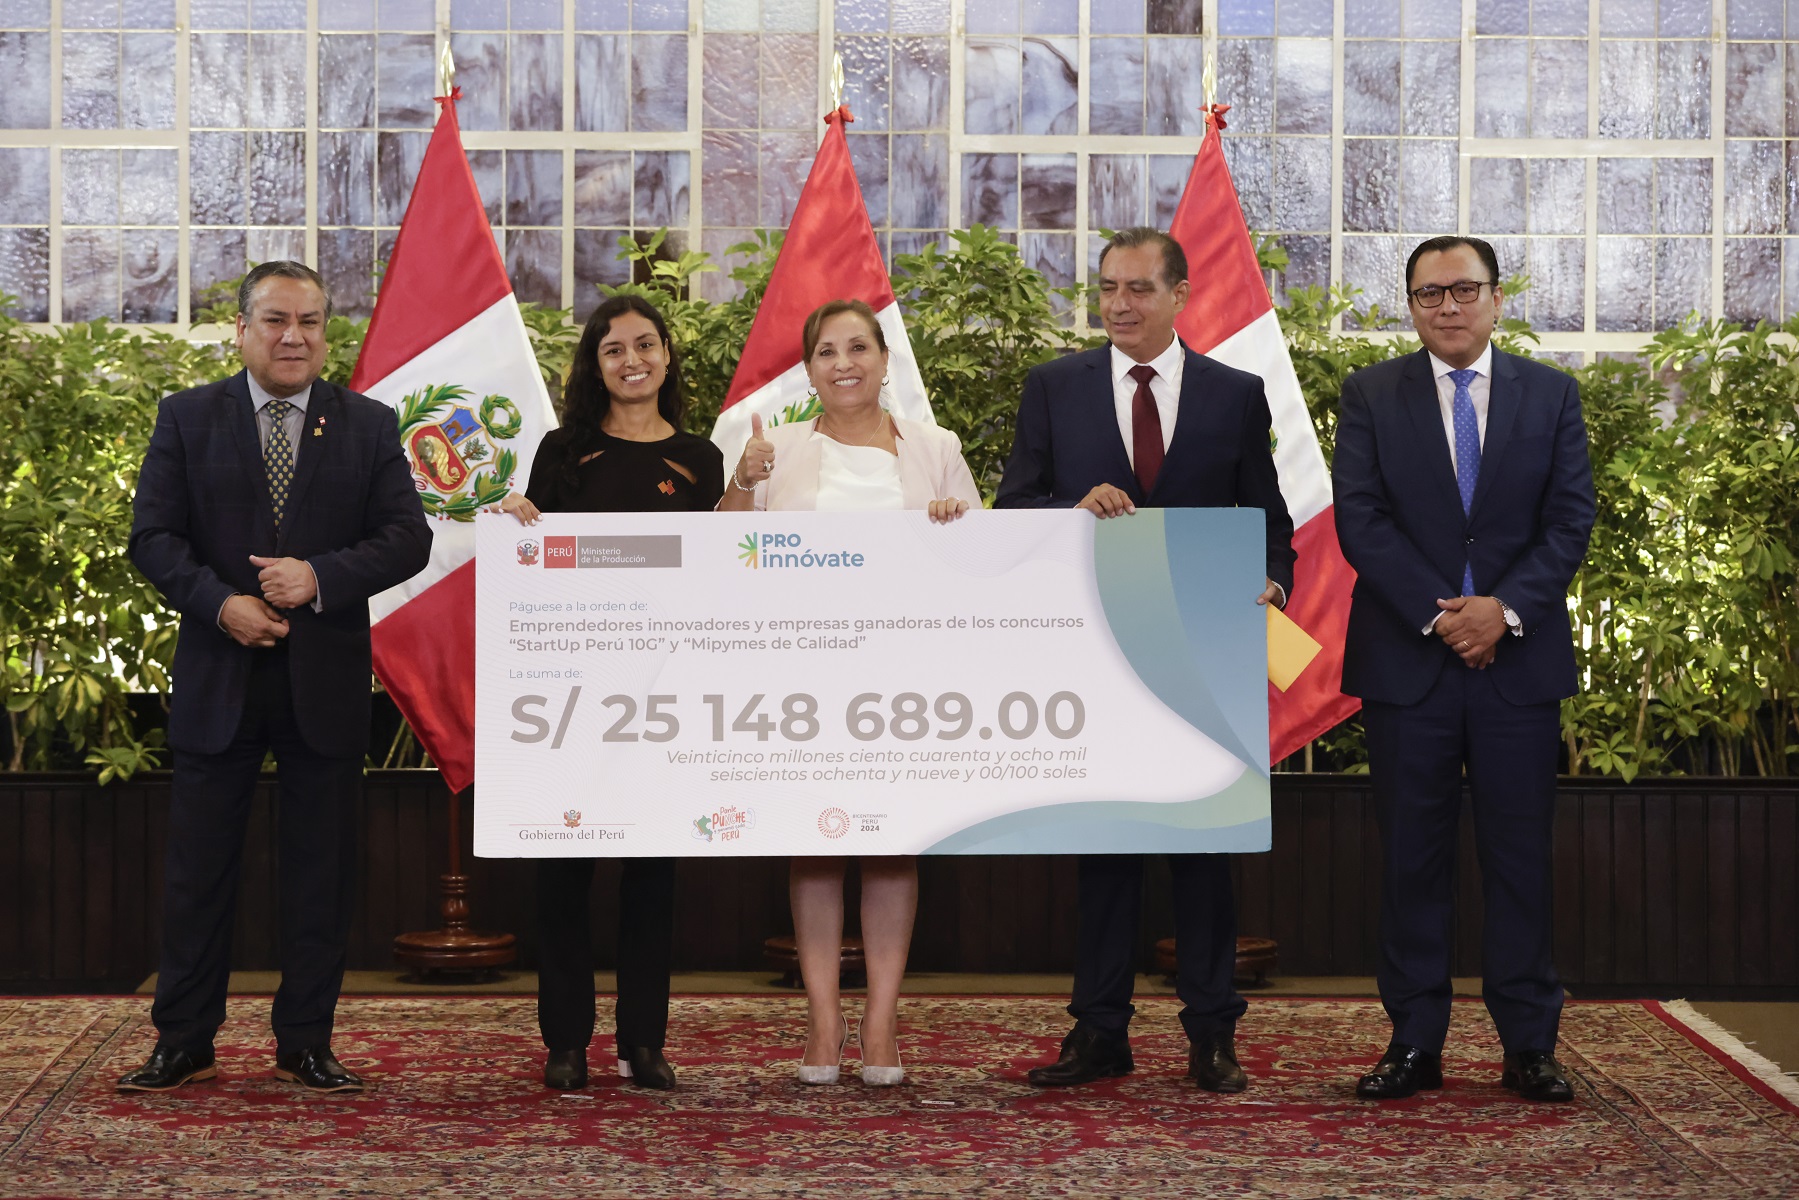 Más de 460 emprendedores y microempresarios fueron premiados por presidenta Dina Boluarte, todos ellos ganadores de concursos del programa ProInnóvate.